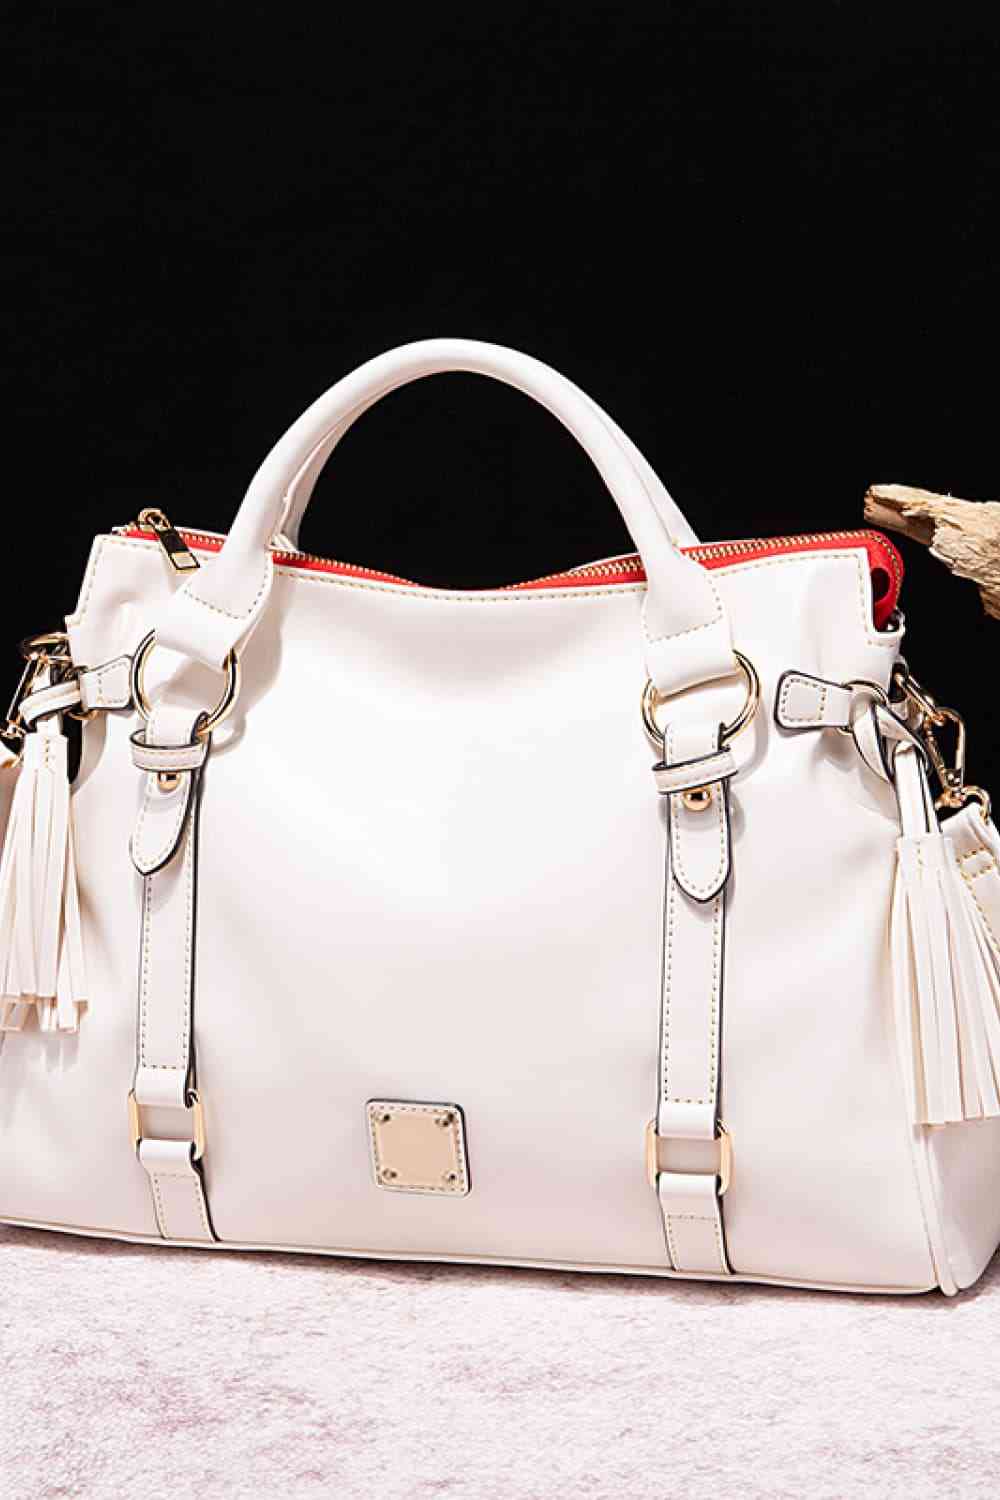 TEEK - PU Leather Handbag with Tassels BAG TEEK Trend Ivory  